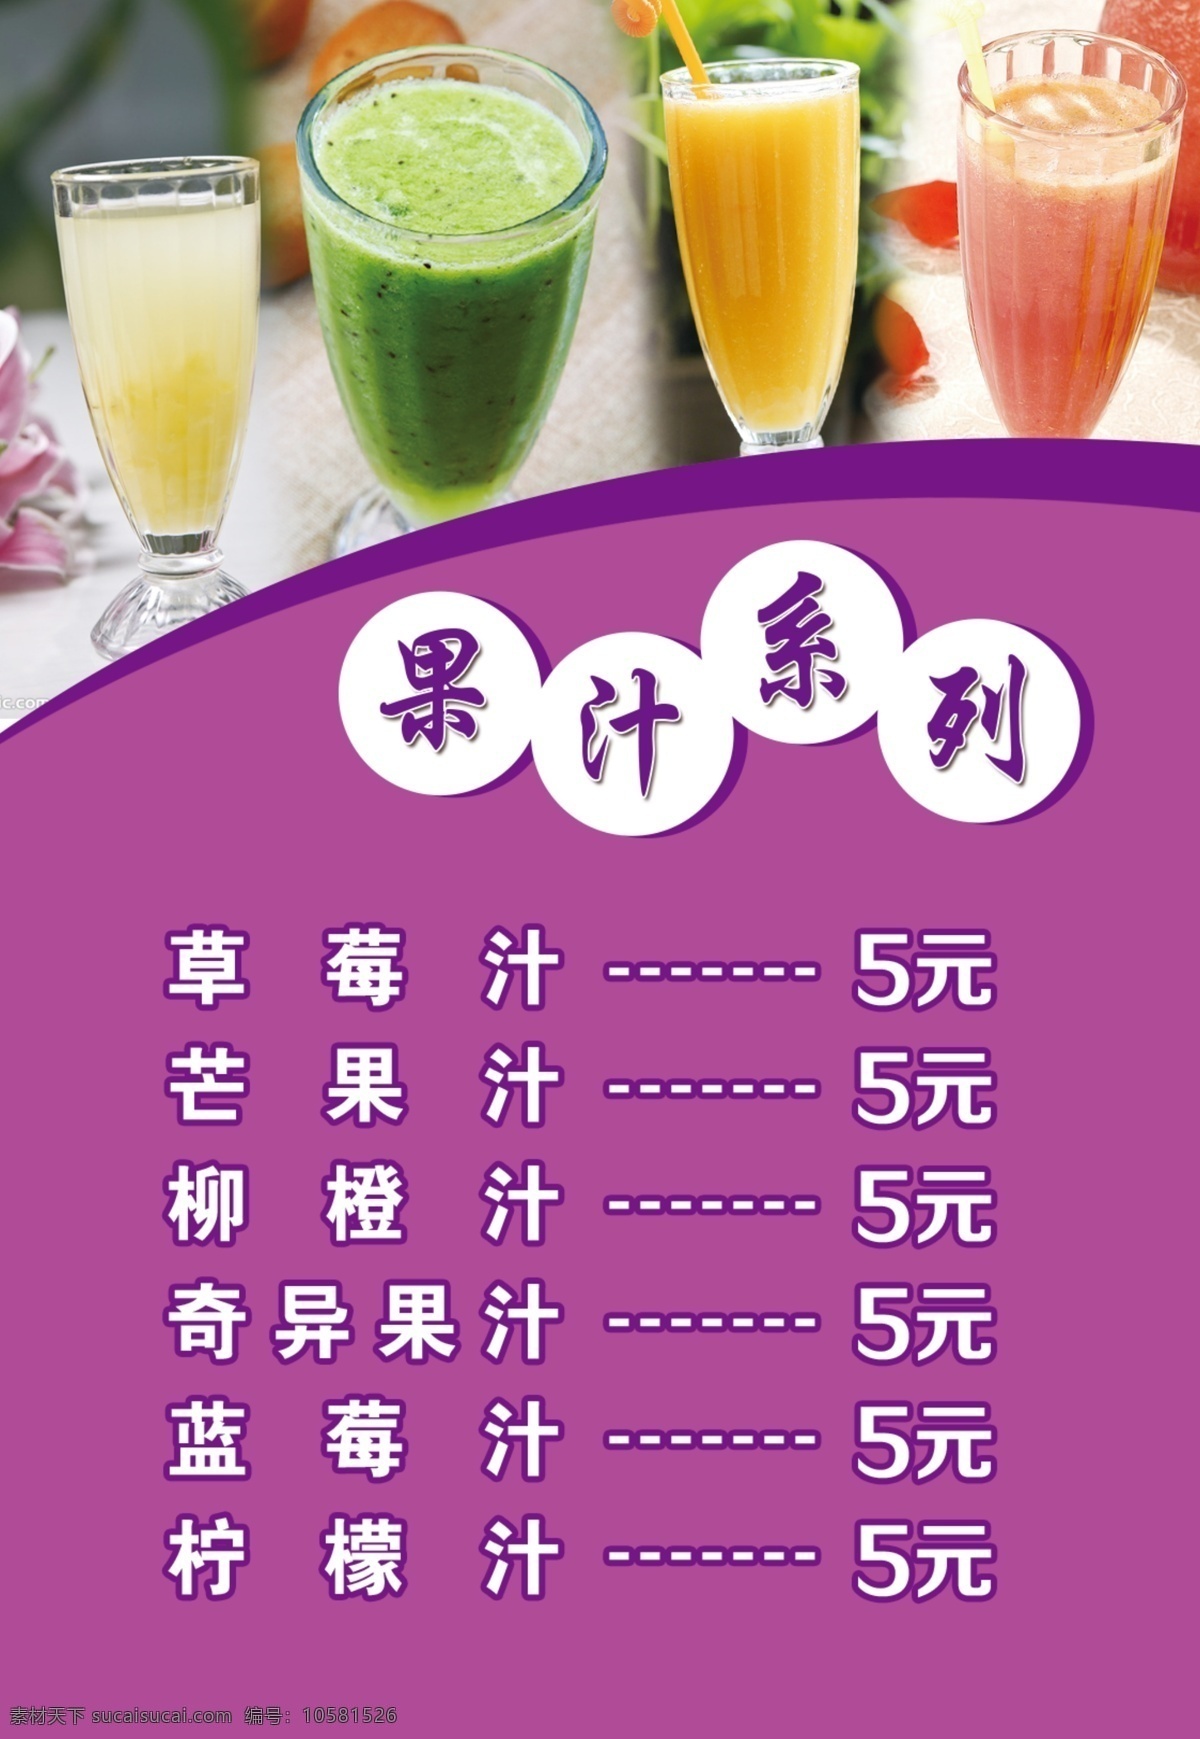 梦幻 价格表 灯箱 七彩虹 系列 五 果汁 七彩虹系列 果汁系列 柠檬汁 橙汁 西瓜汁 紫色